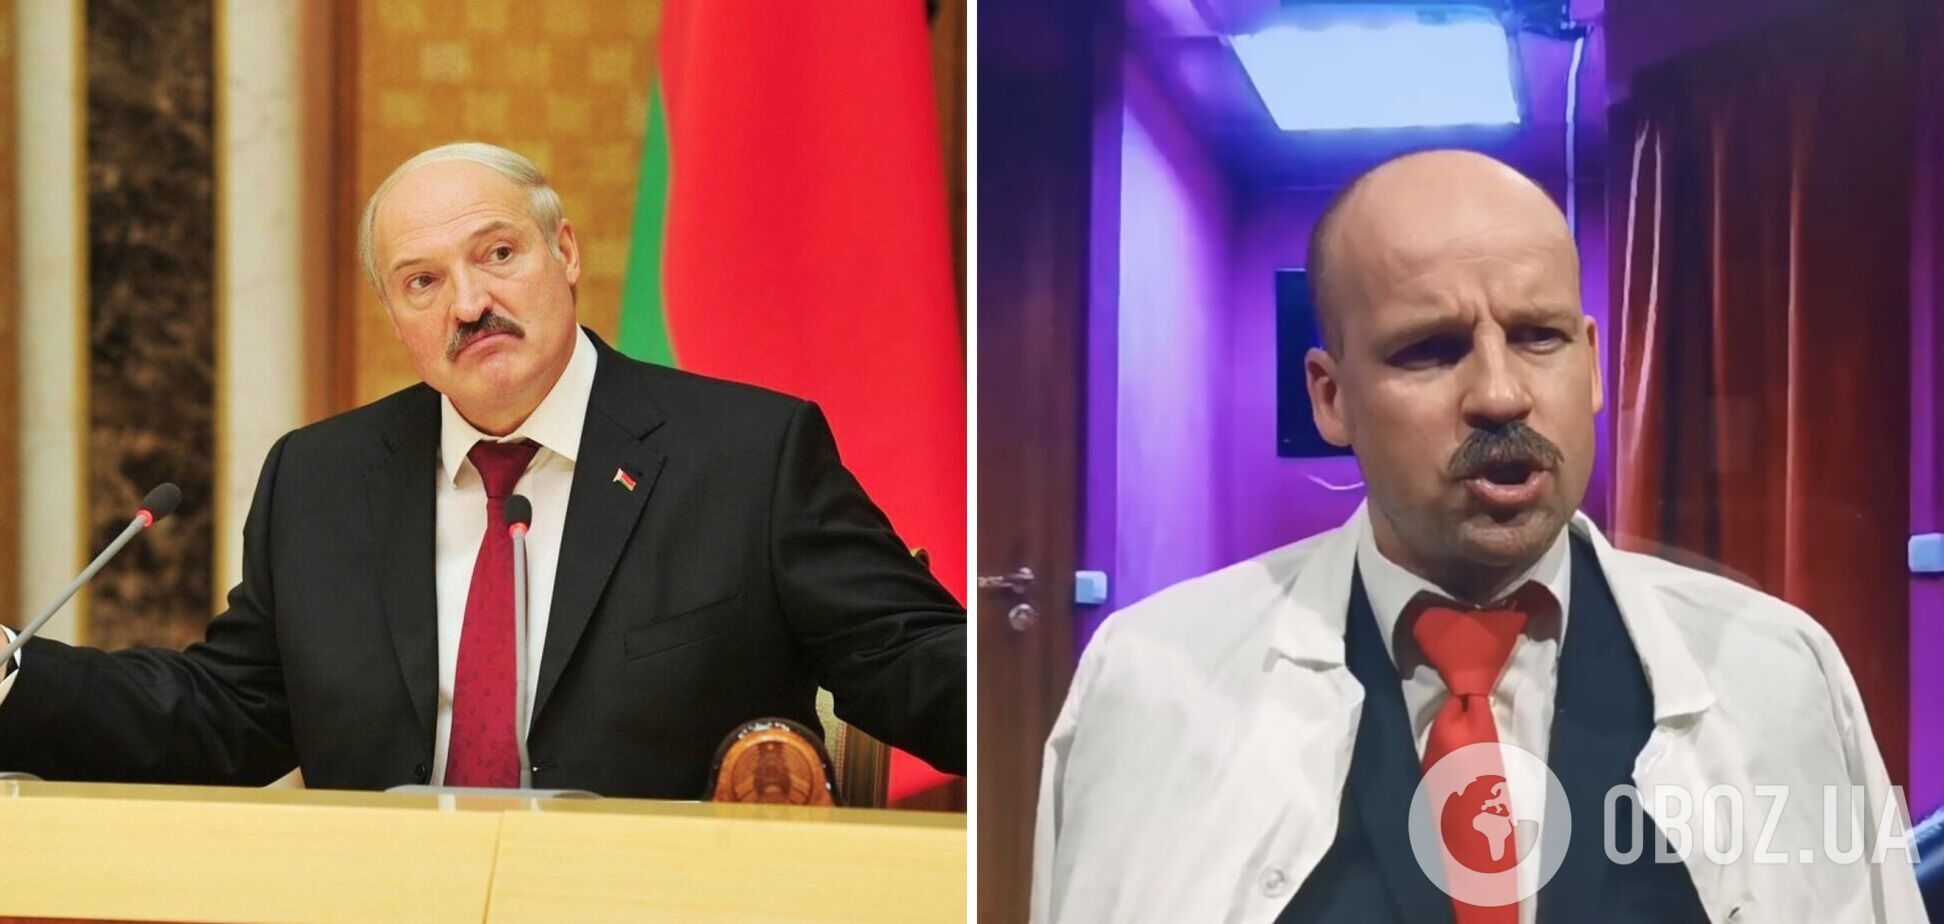 Лукашенко устроил разнос в секс-шопе. Новая пародия звезды 'Квартала 95' Великого рассмешила сеть